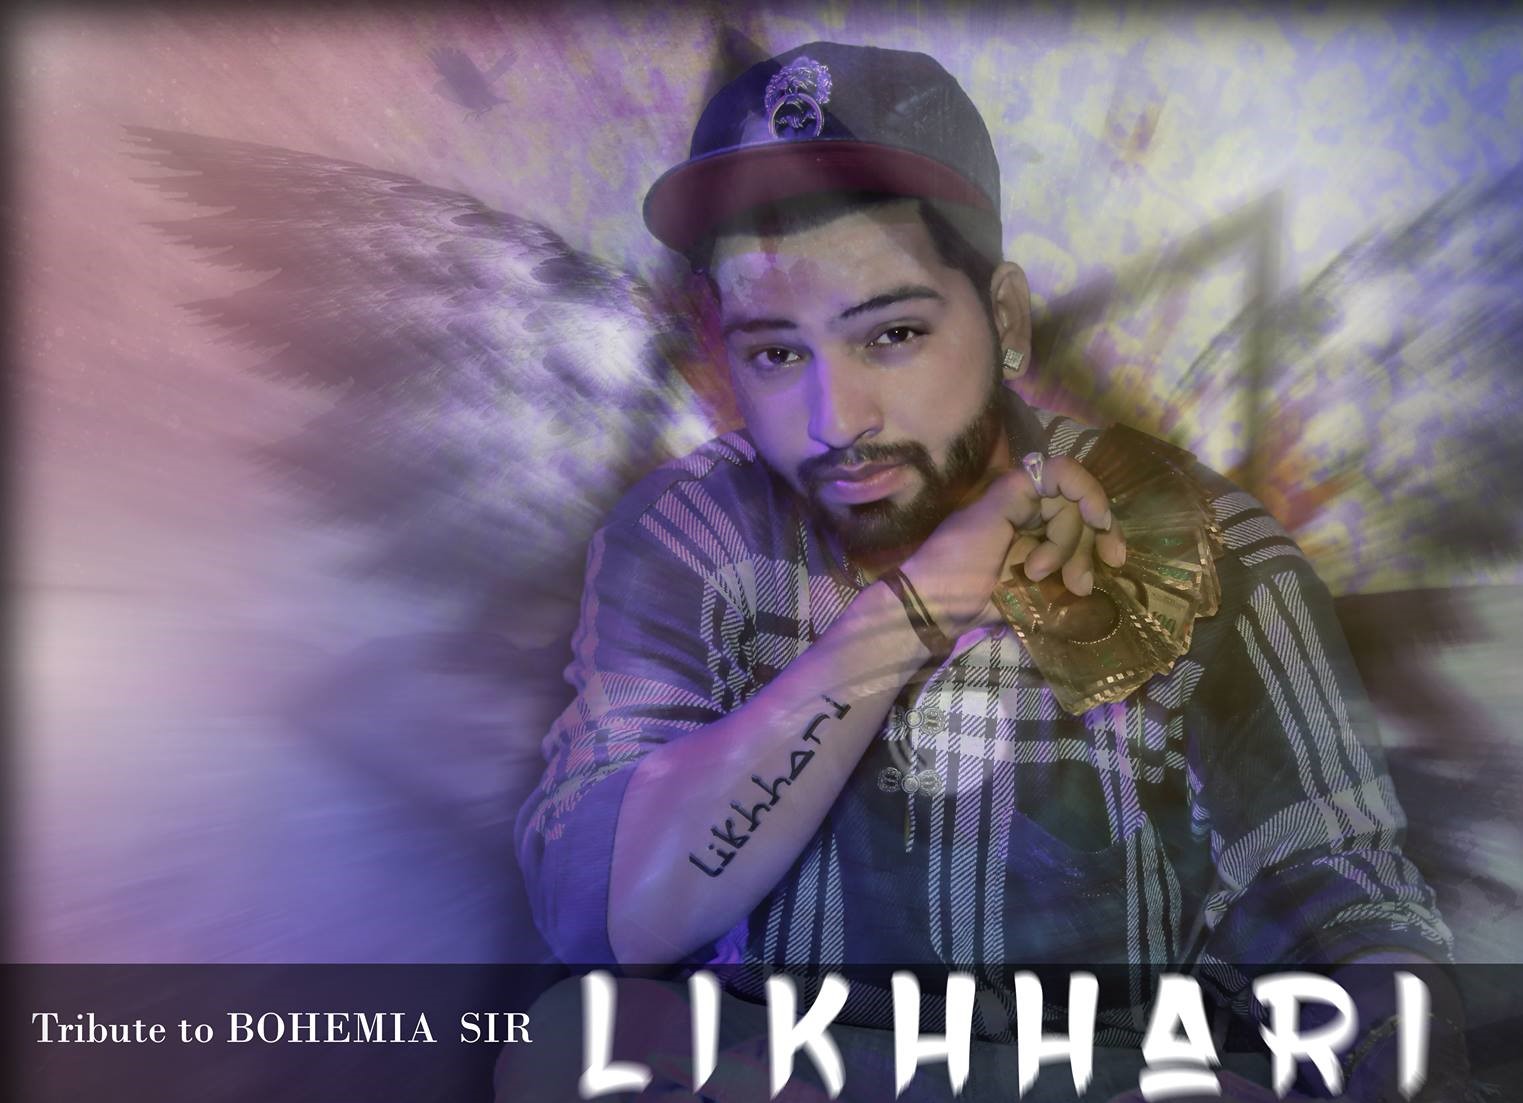 likhhari bohemia the punjabi rapper tribute